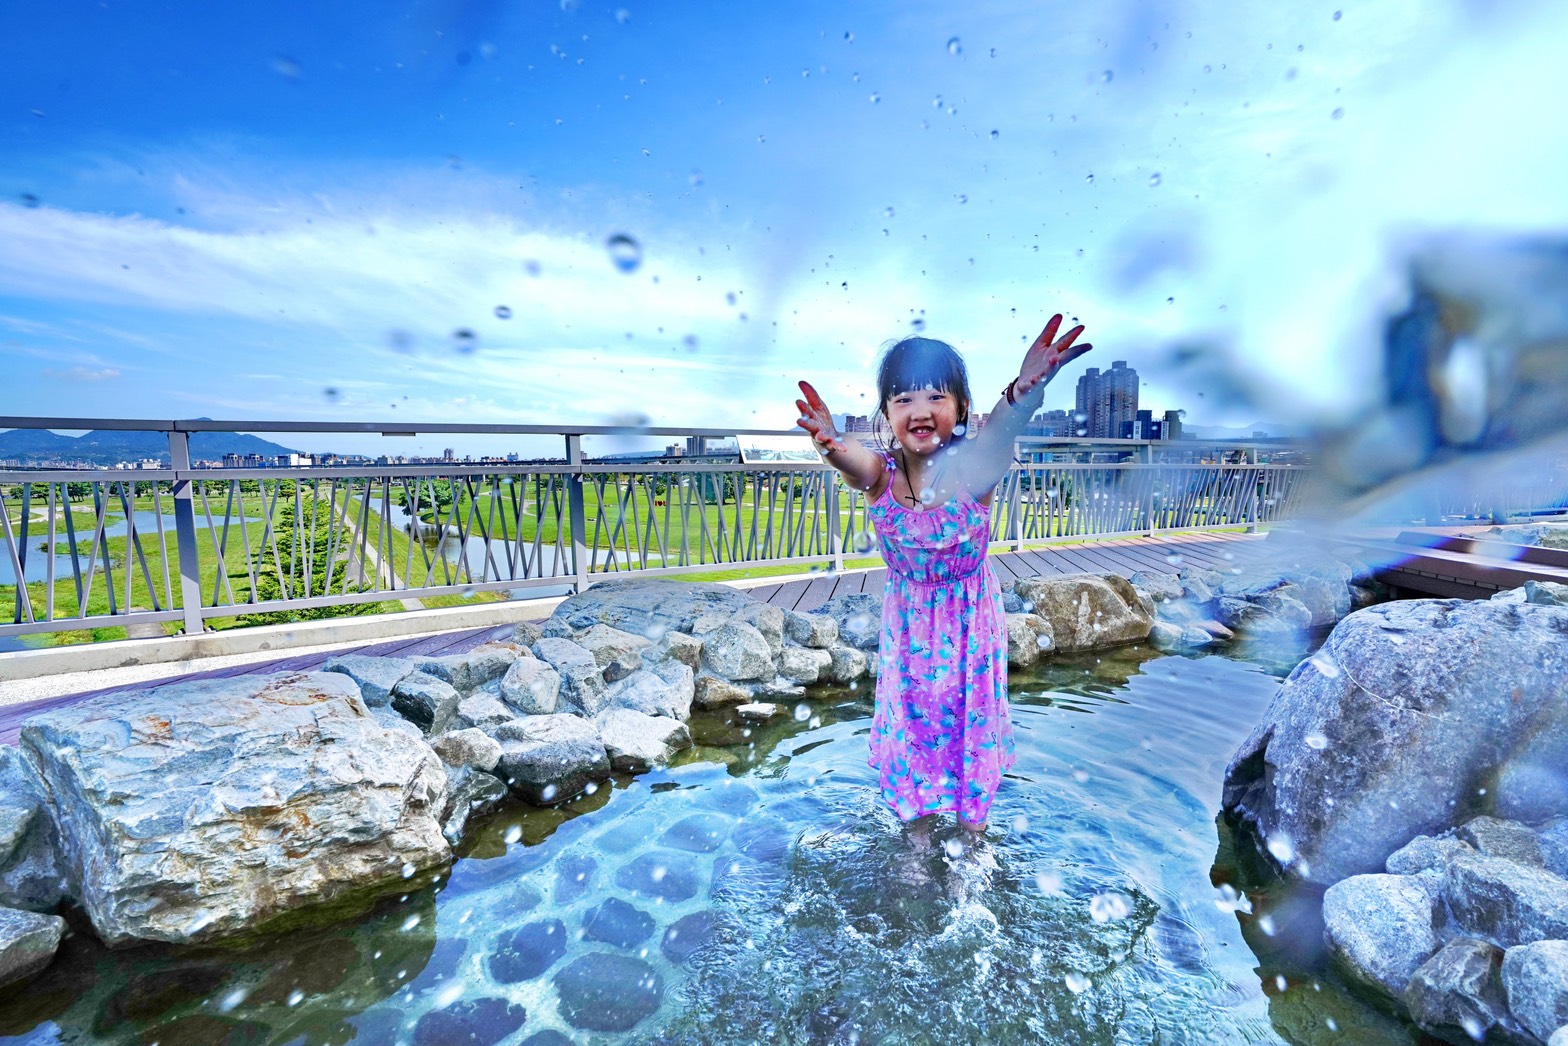 二重辰光橋戲水設施已經在6月16日重新開放